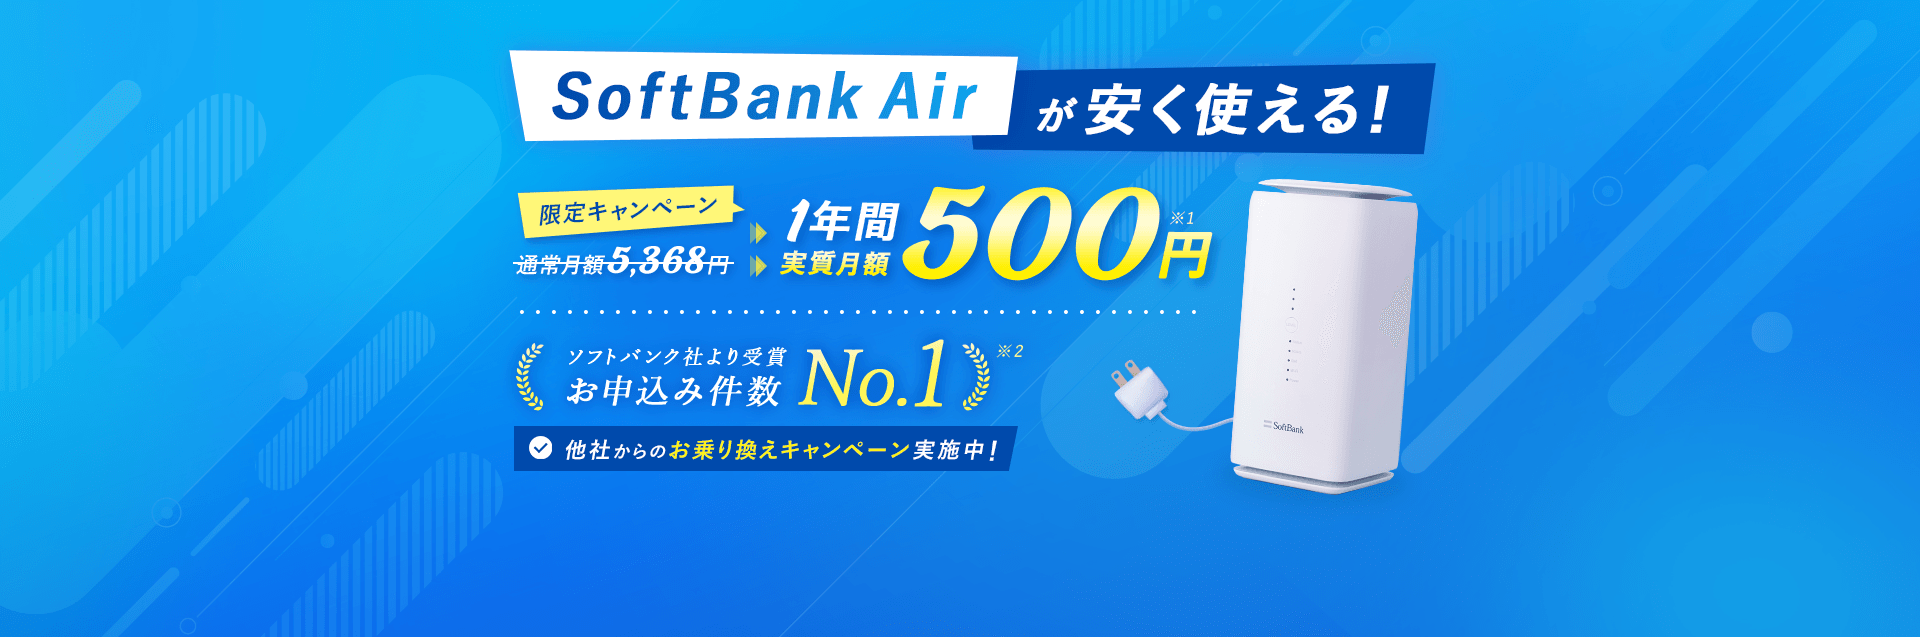 SoftBank Airが安く使える!!